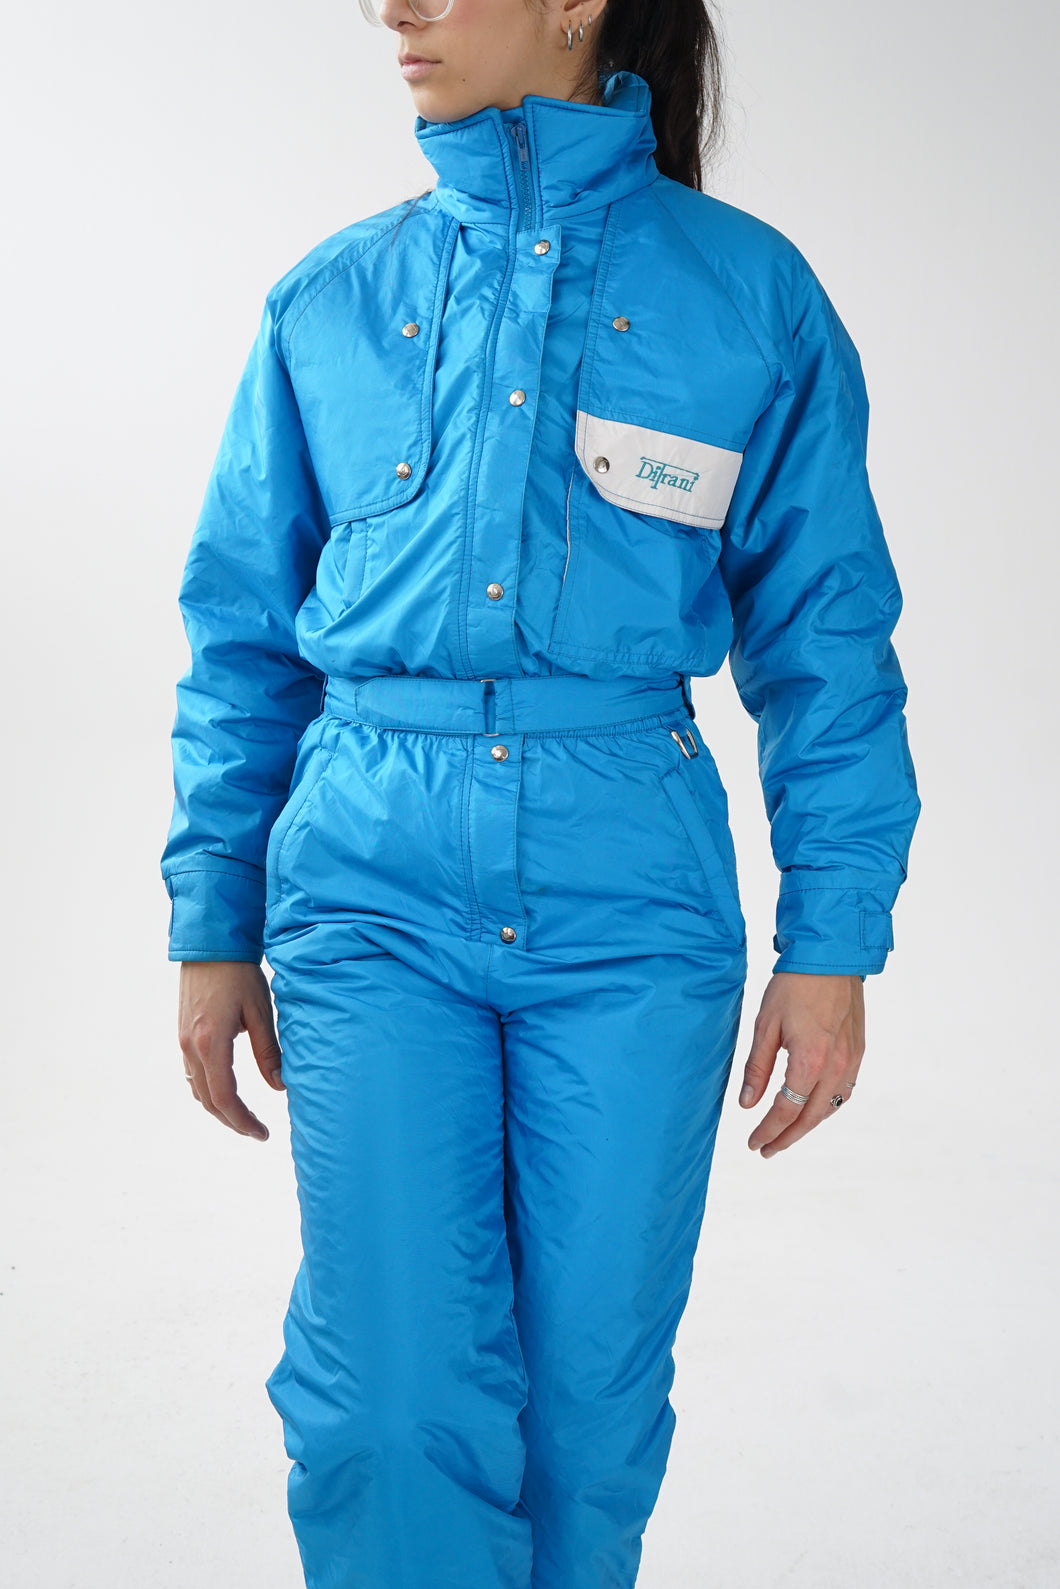 Ski suit vintage Ditrani bleu pour femme taille 8 (S)